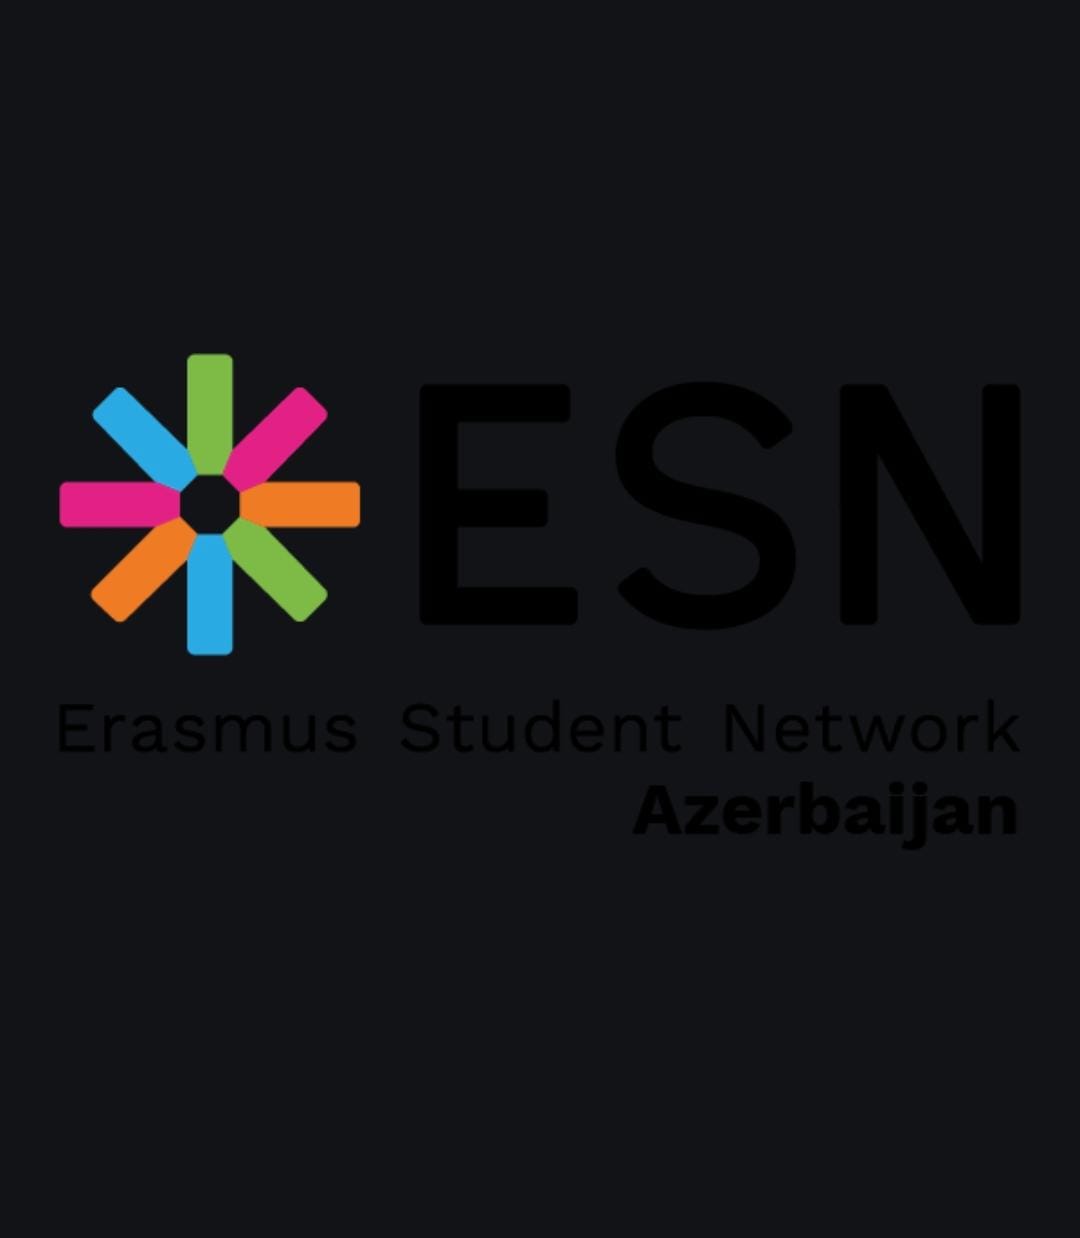 Erasmus Tələbə Şəbəkəsi - Azərbaycan İB (ESN)